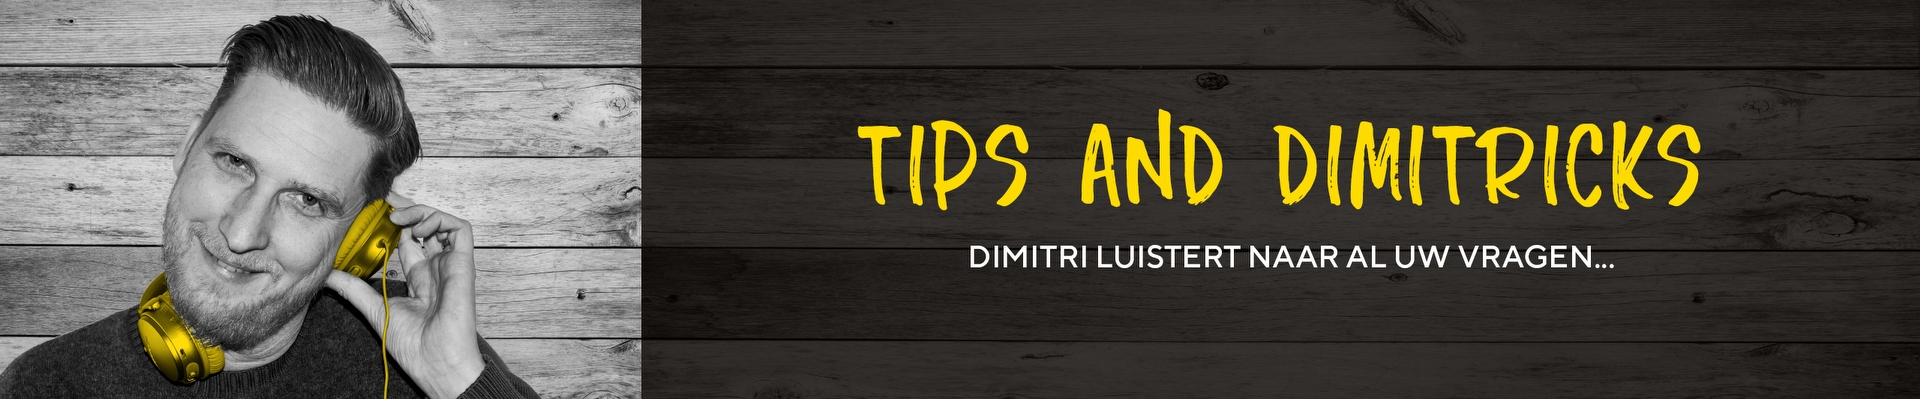 Tips & Dimitricks - Eén primer voor alles